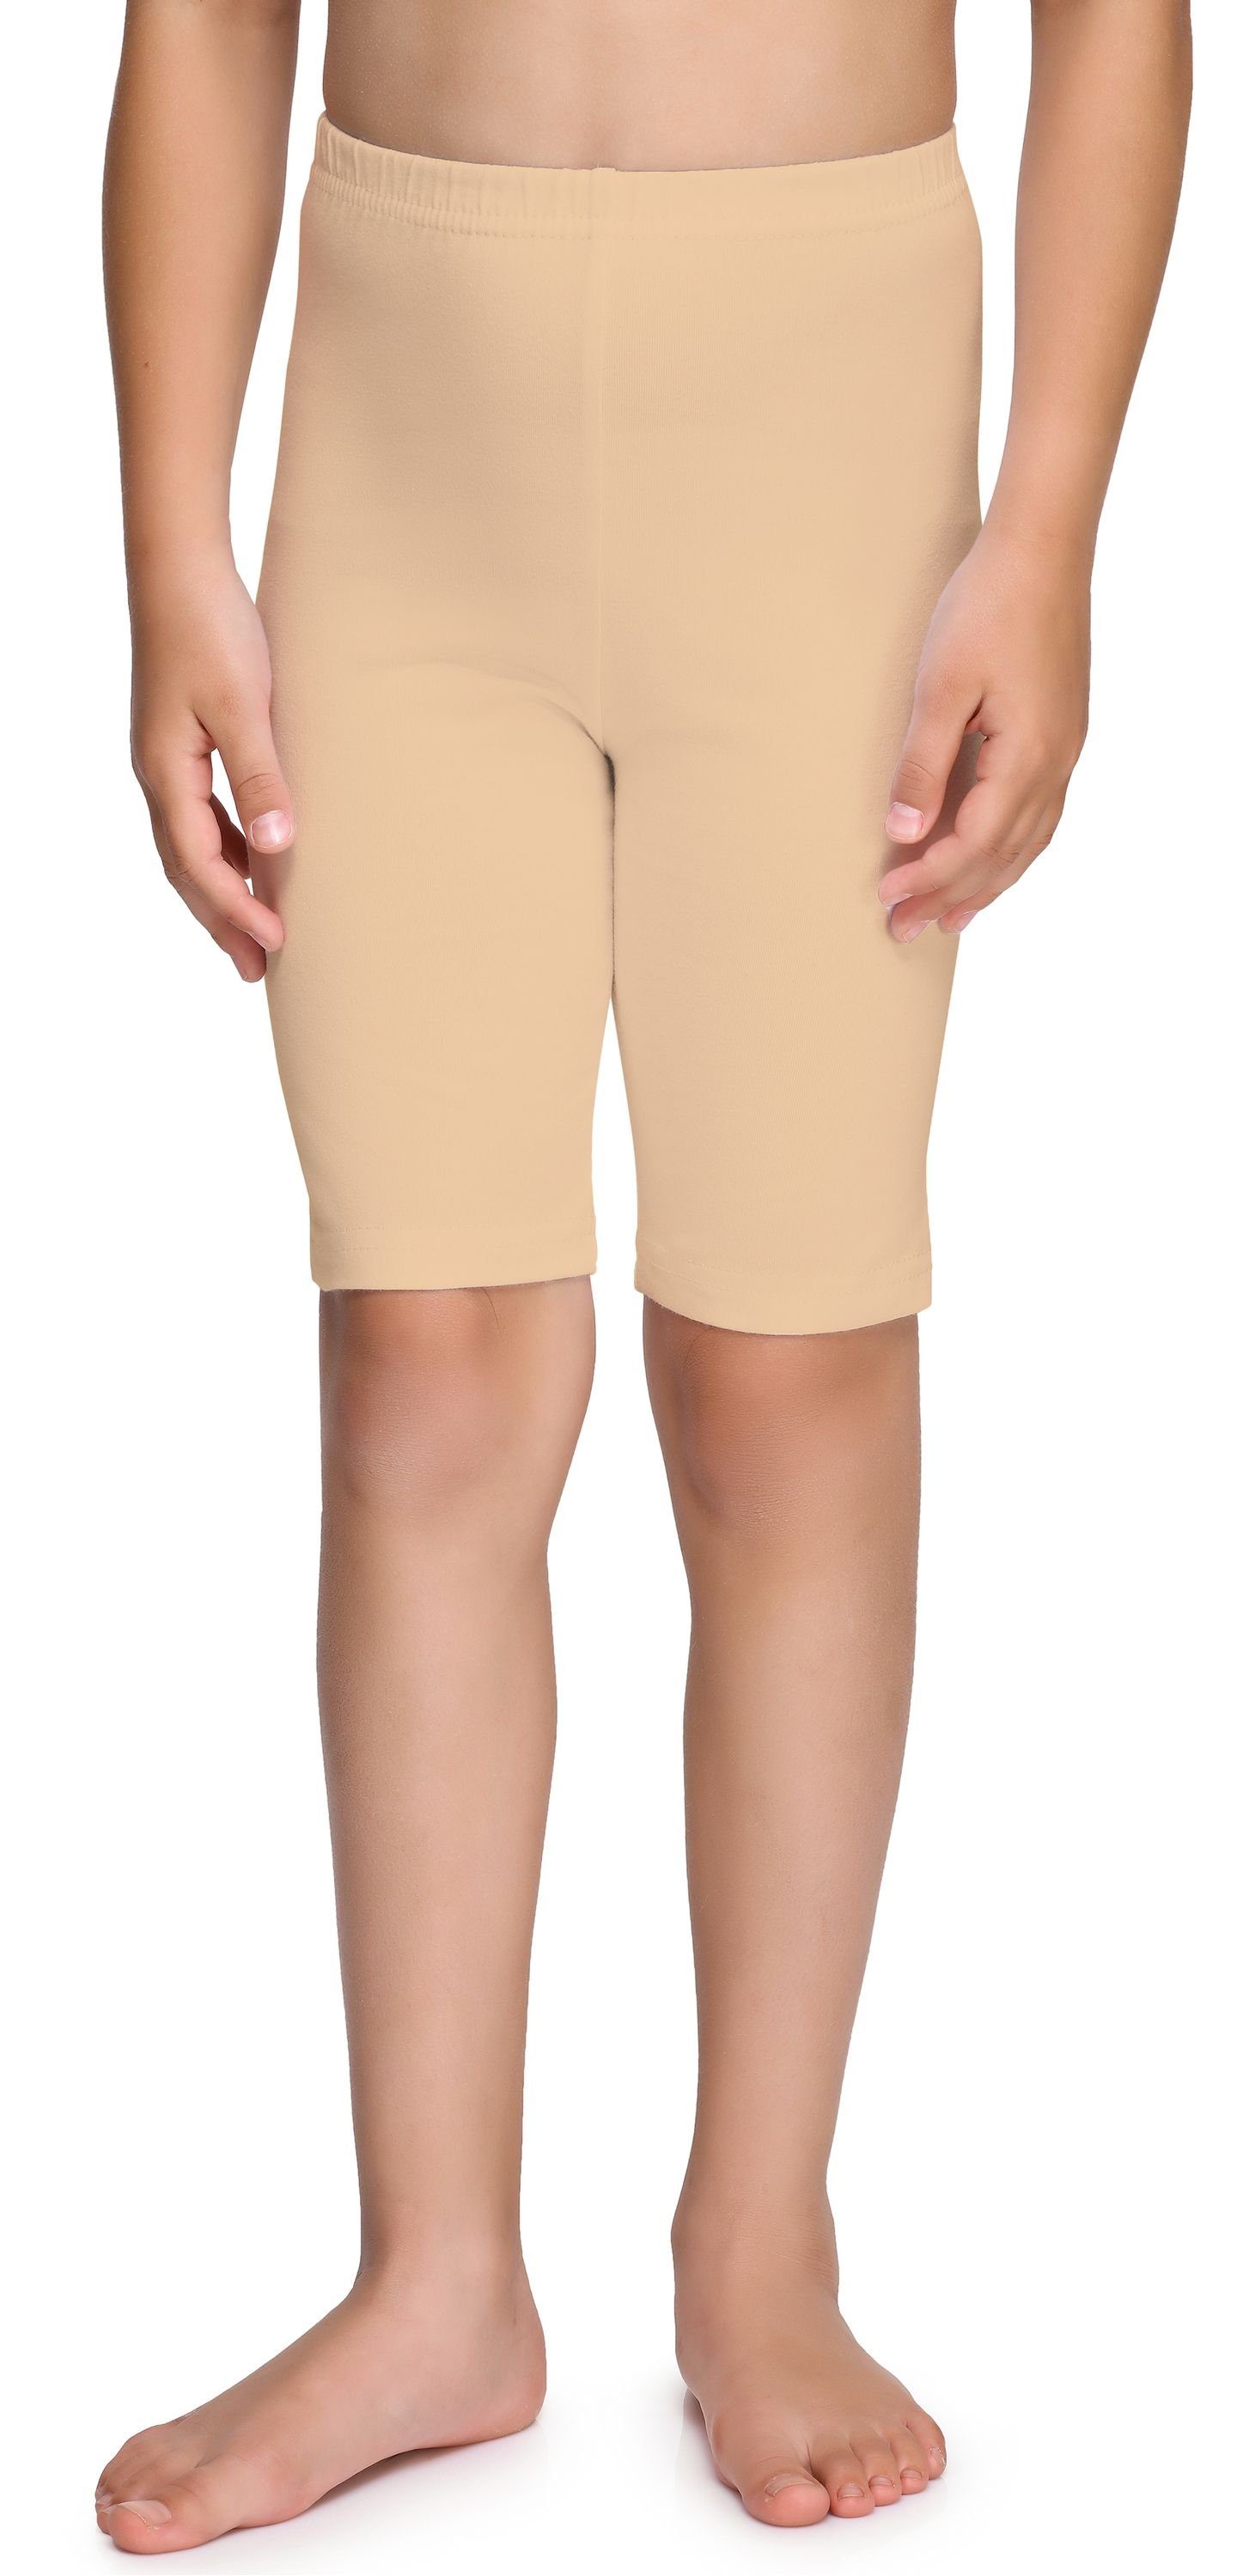 (1-tlg) aus Kurze Baumwolle Leggings Merry Mädchen MS10-227 Sand elastischer Style Leggings Bund